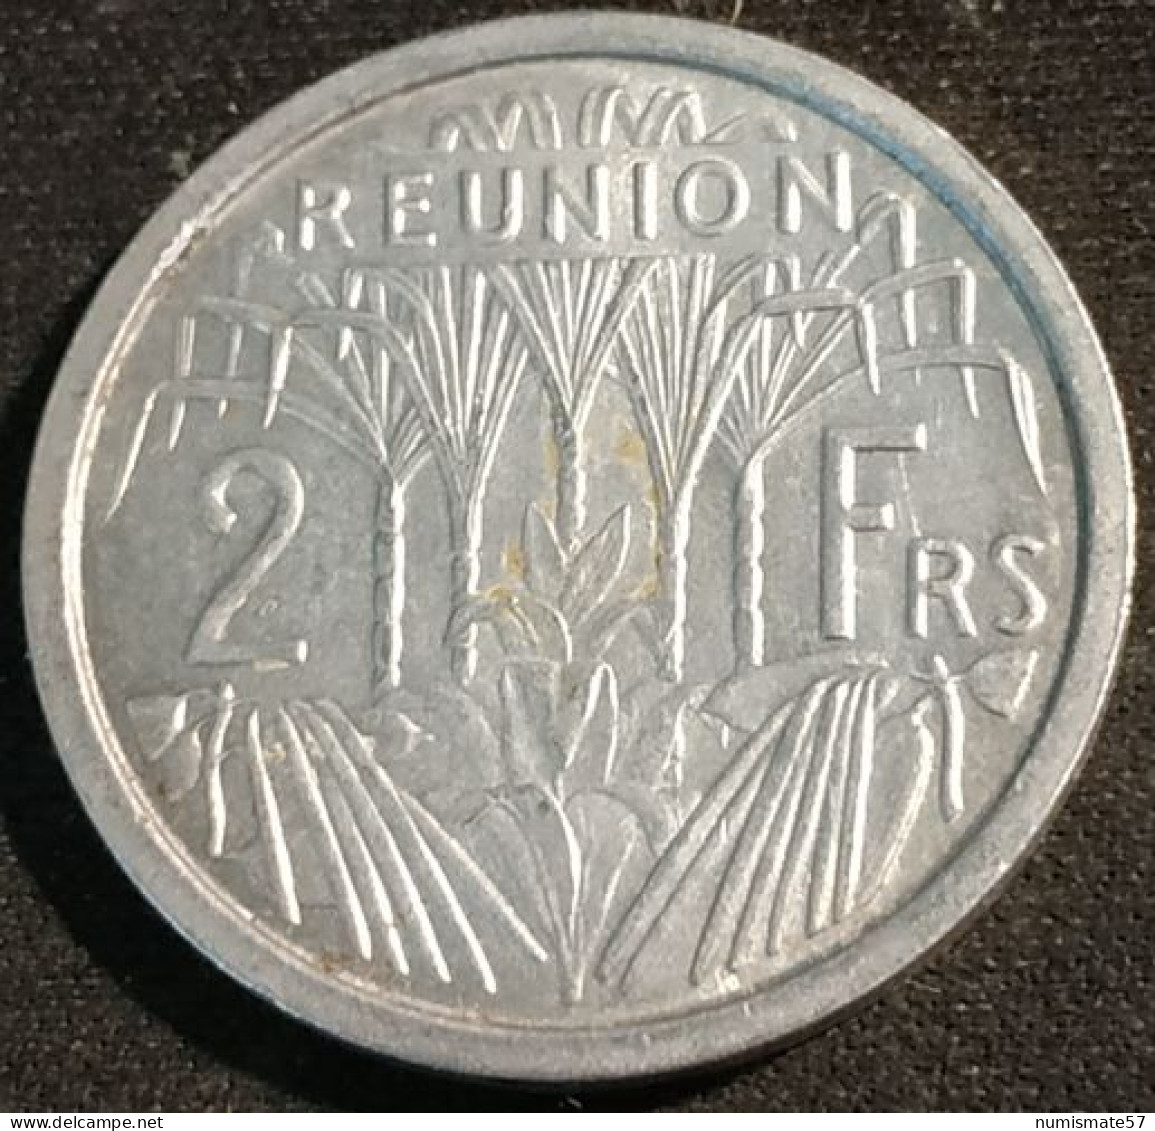 RARE - LA REUNION - 2 FRANCS 1969 - KM 8 - Réunion